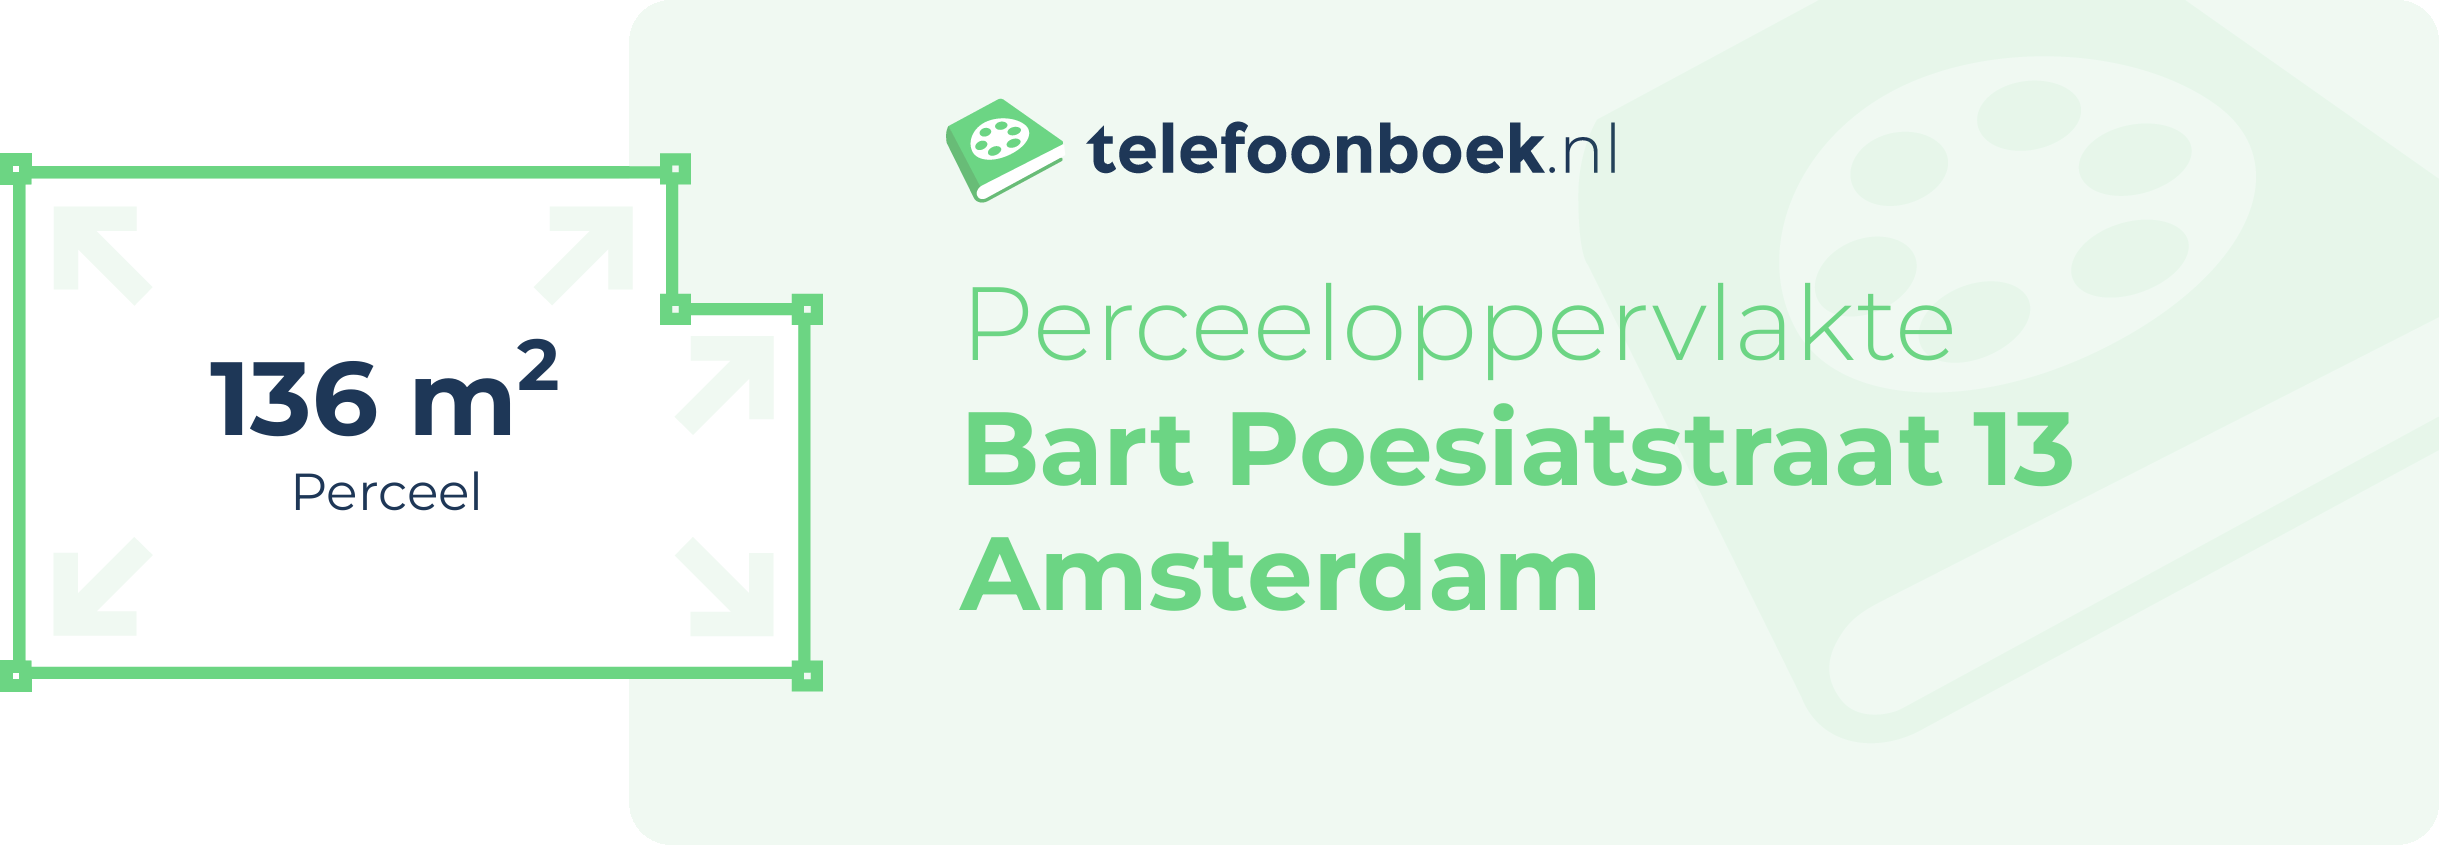 Perceeloppervlakte Bart Poesiatstraat 13 Amsterdam